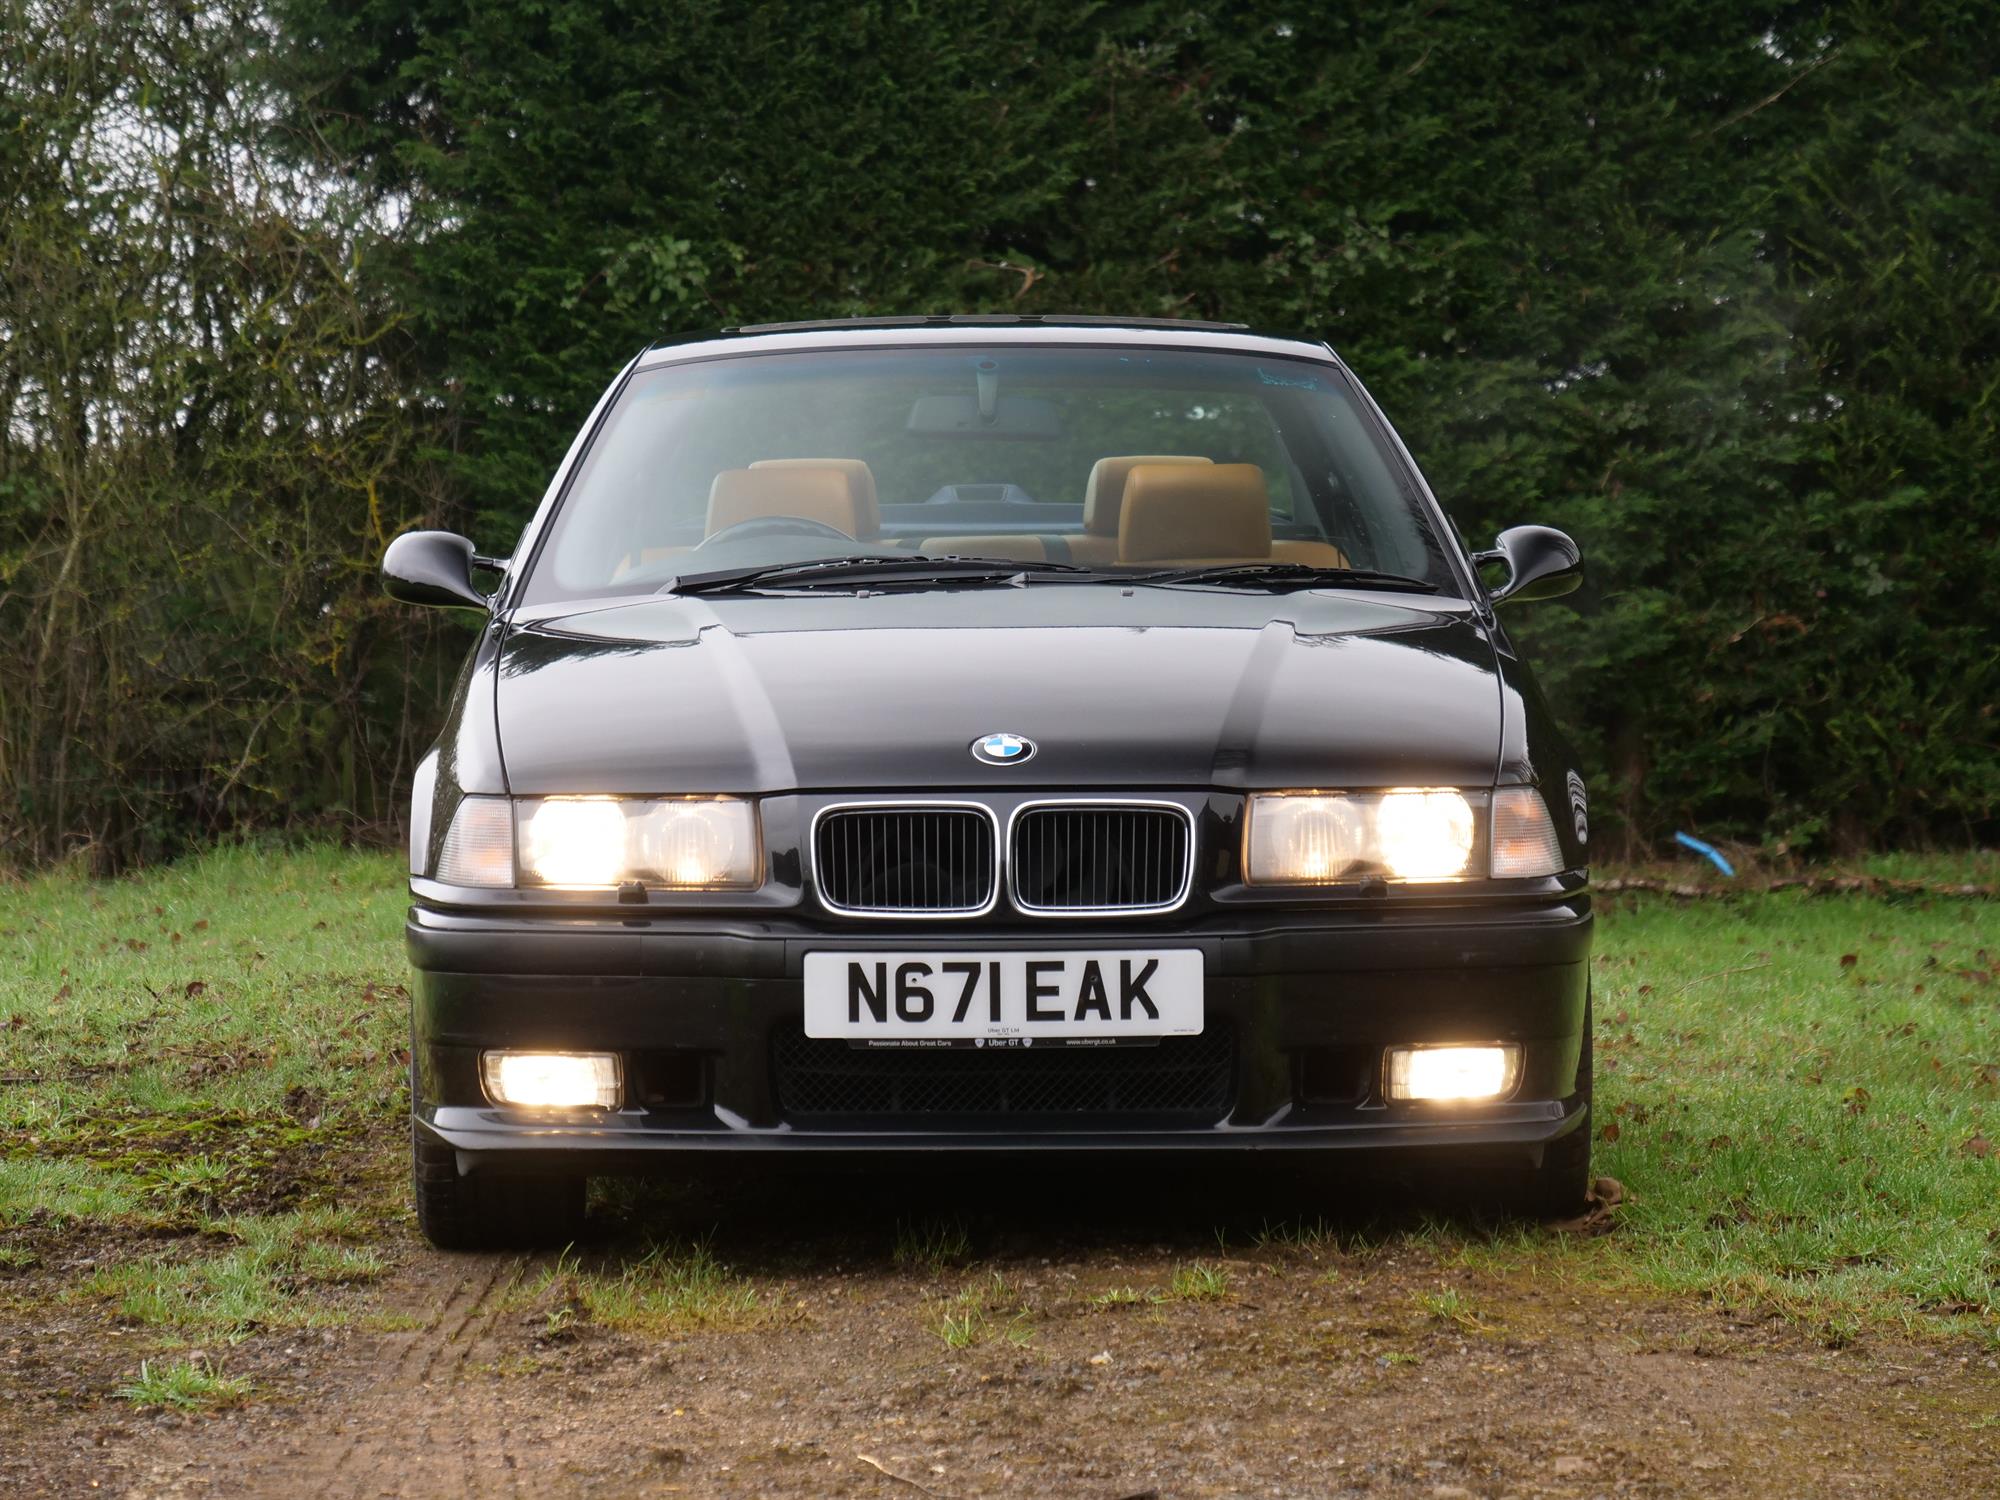 1996 BMW M3 Evolution (E36) - Image 4 of 18